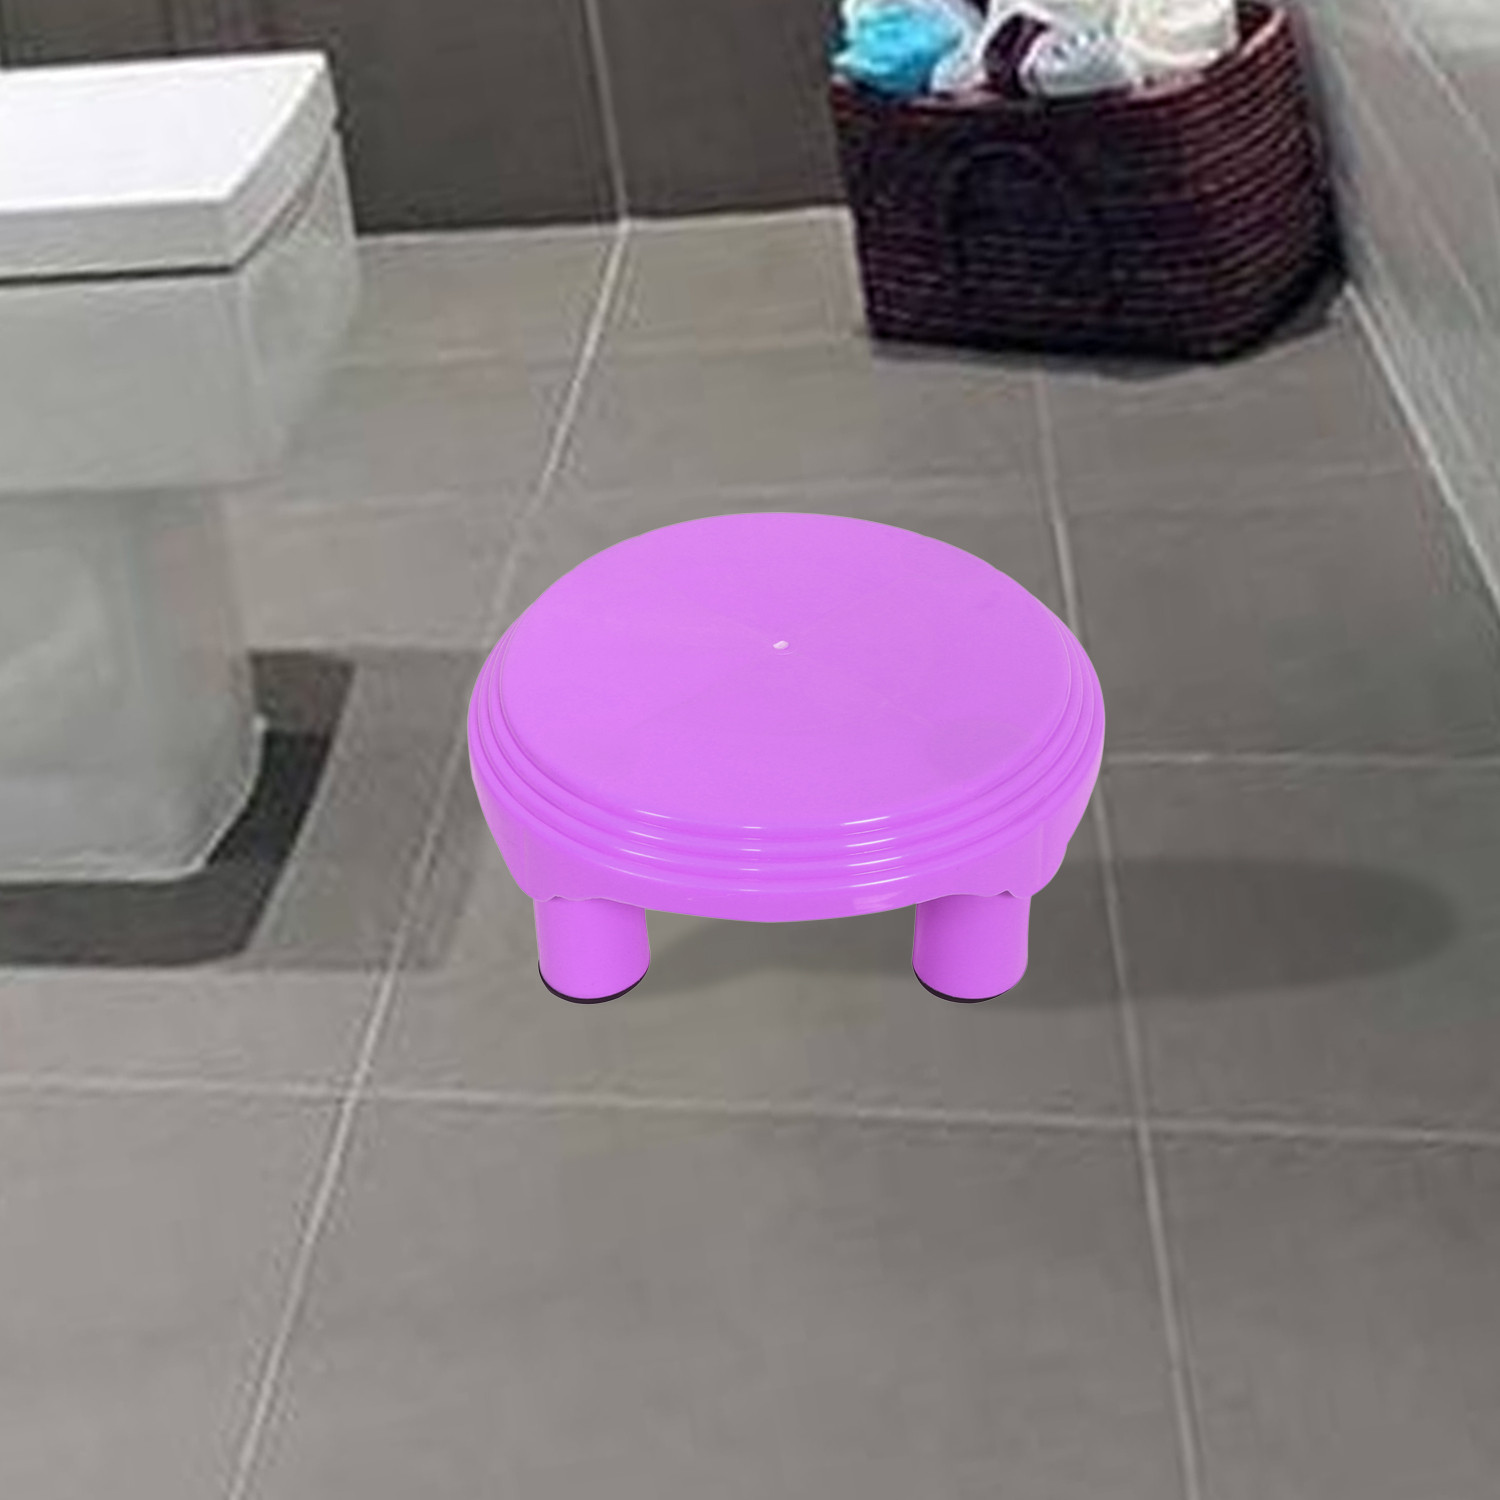 Kuber Industries Bathroom Stool|Plastic Stool|Anti-slip Bathing Stool|Stool for Senior Citizen|Patla for Bathroom|Pack of 2 (Mint Green & Pink)